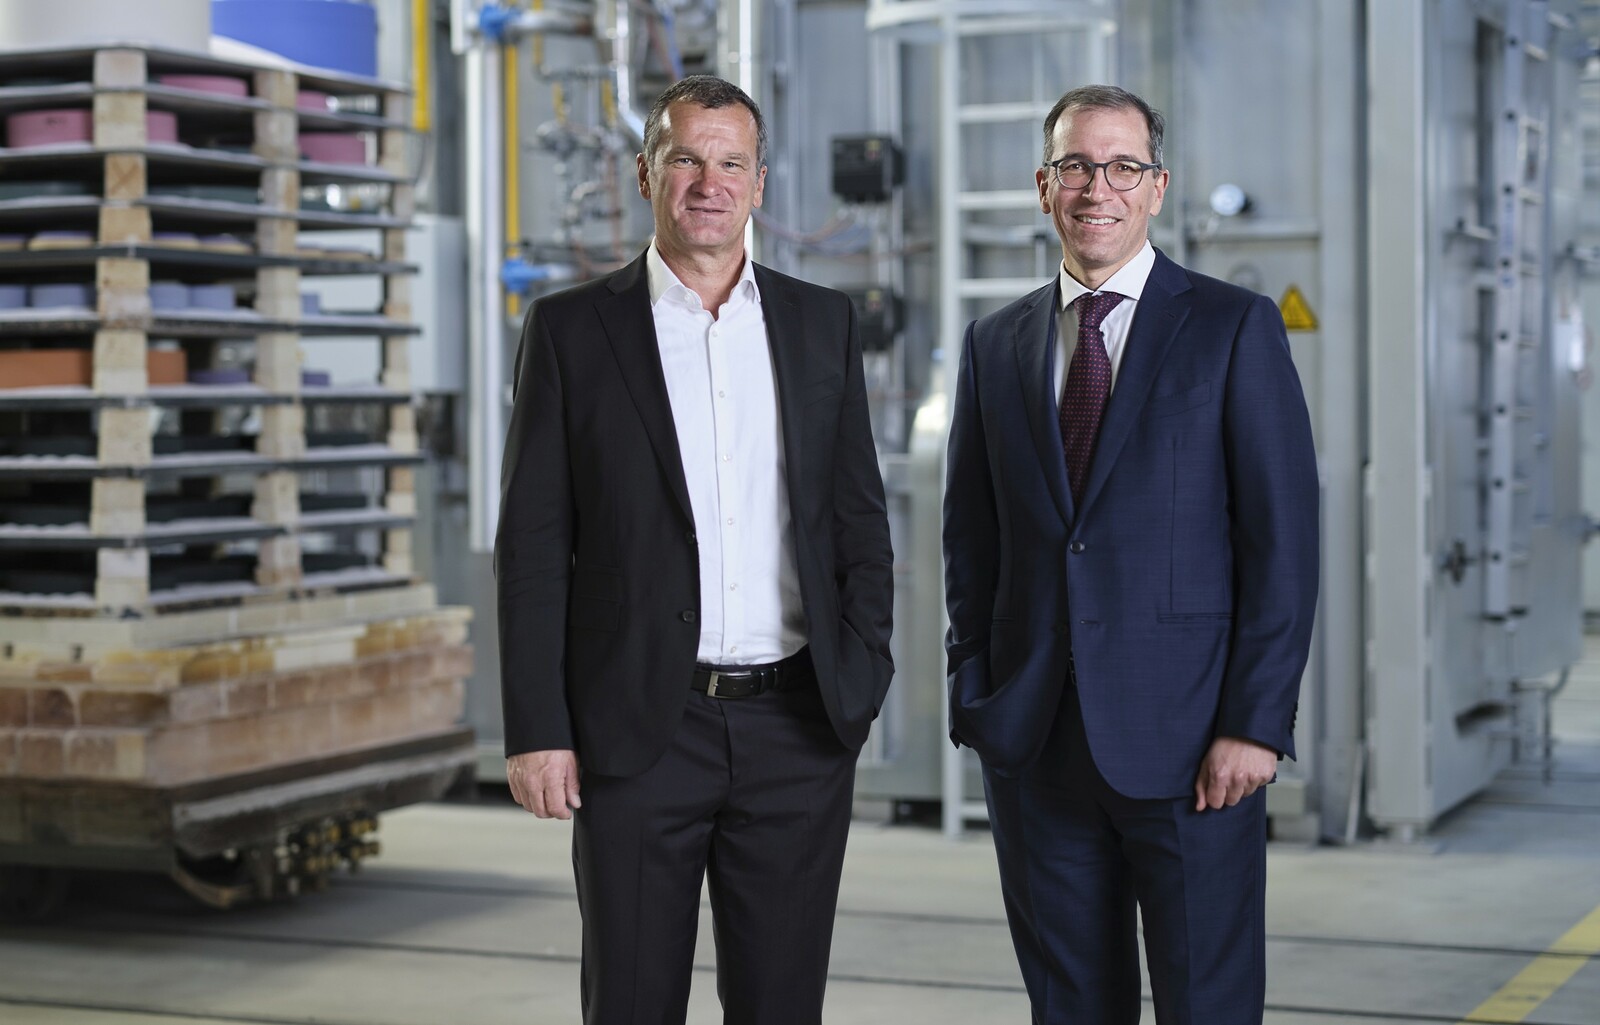 Thomas Friess folgt als CEO von Tyrolit auf Christoph Swarovski (rechts). Friess richtet den Fokus auf die fortschreitenden Digitalisierung sowie die Erschließung von Zukunftsbranchen wie Medizintechnik, Elektrotechnik oder Umwelttechnologie.